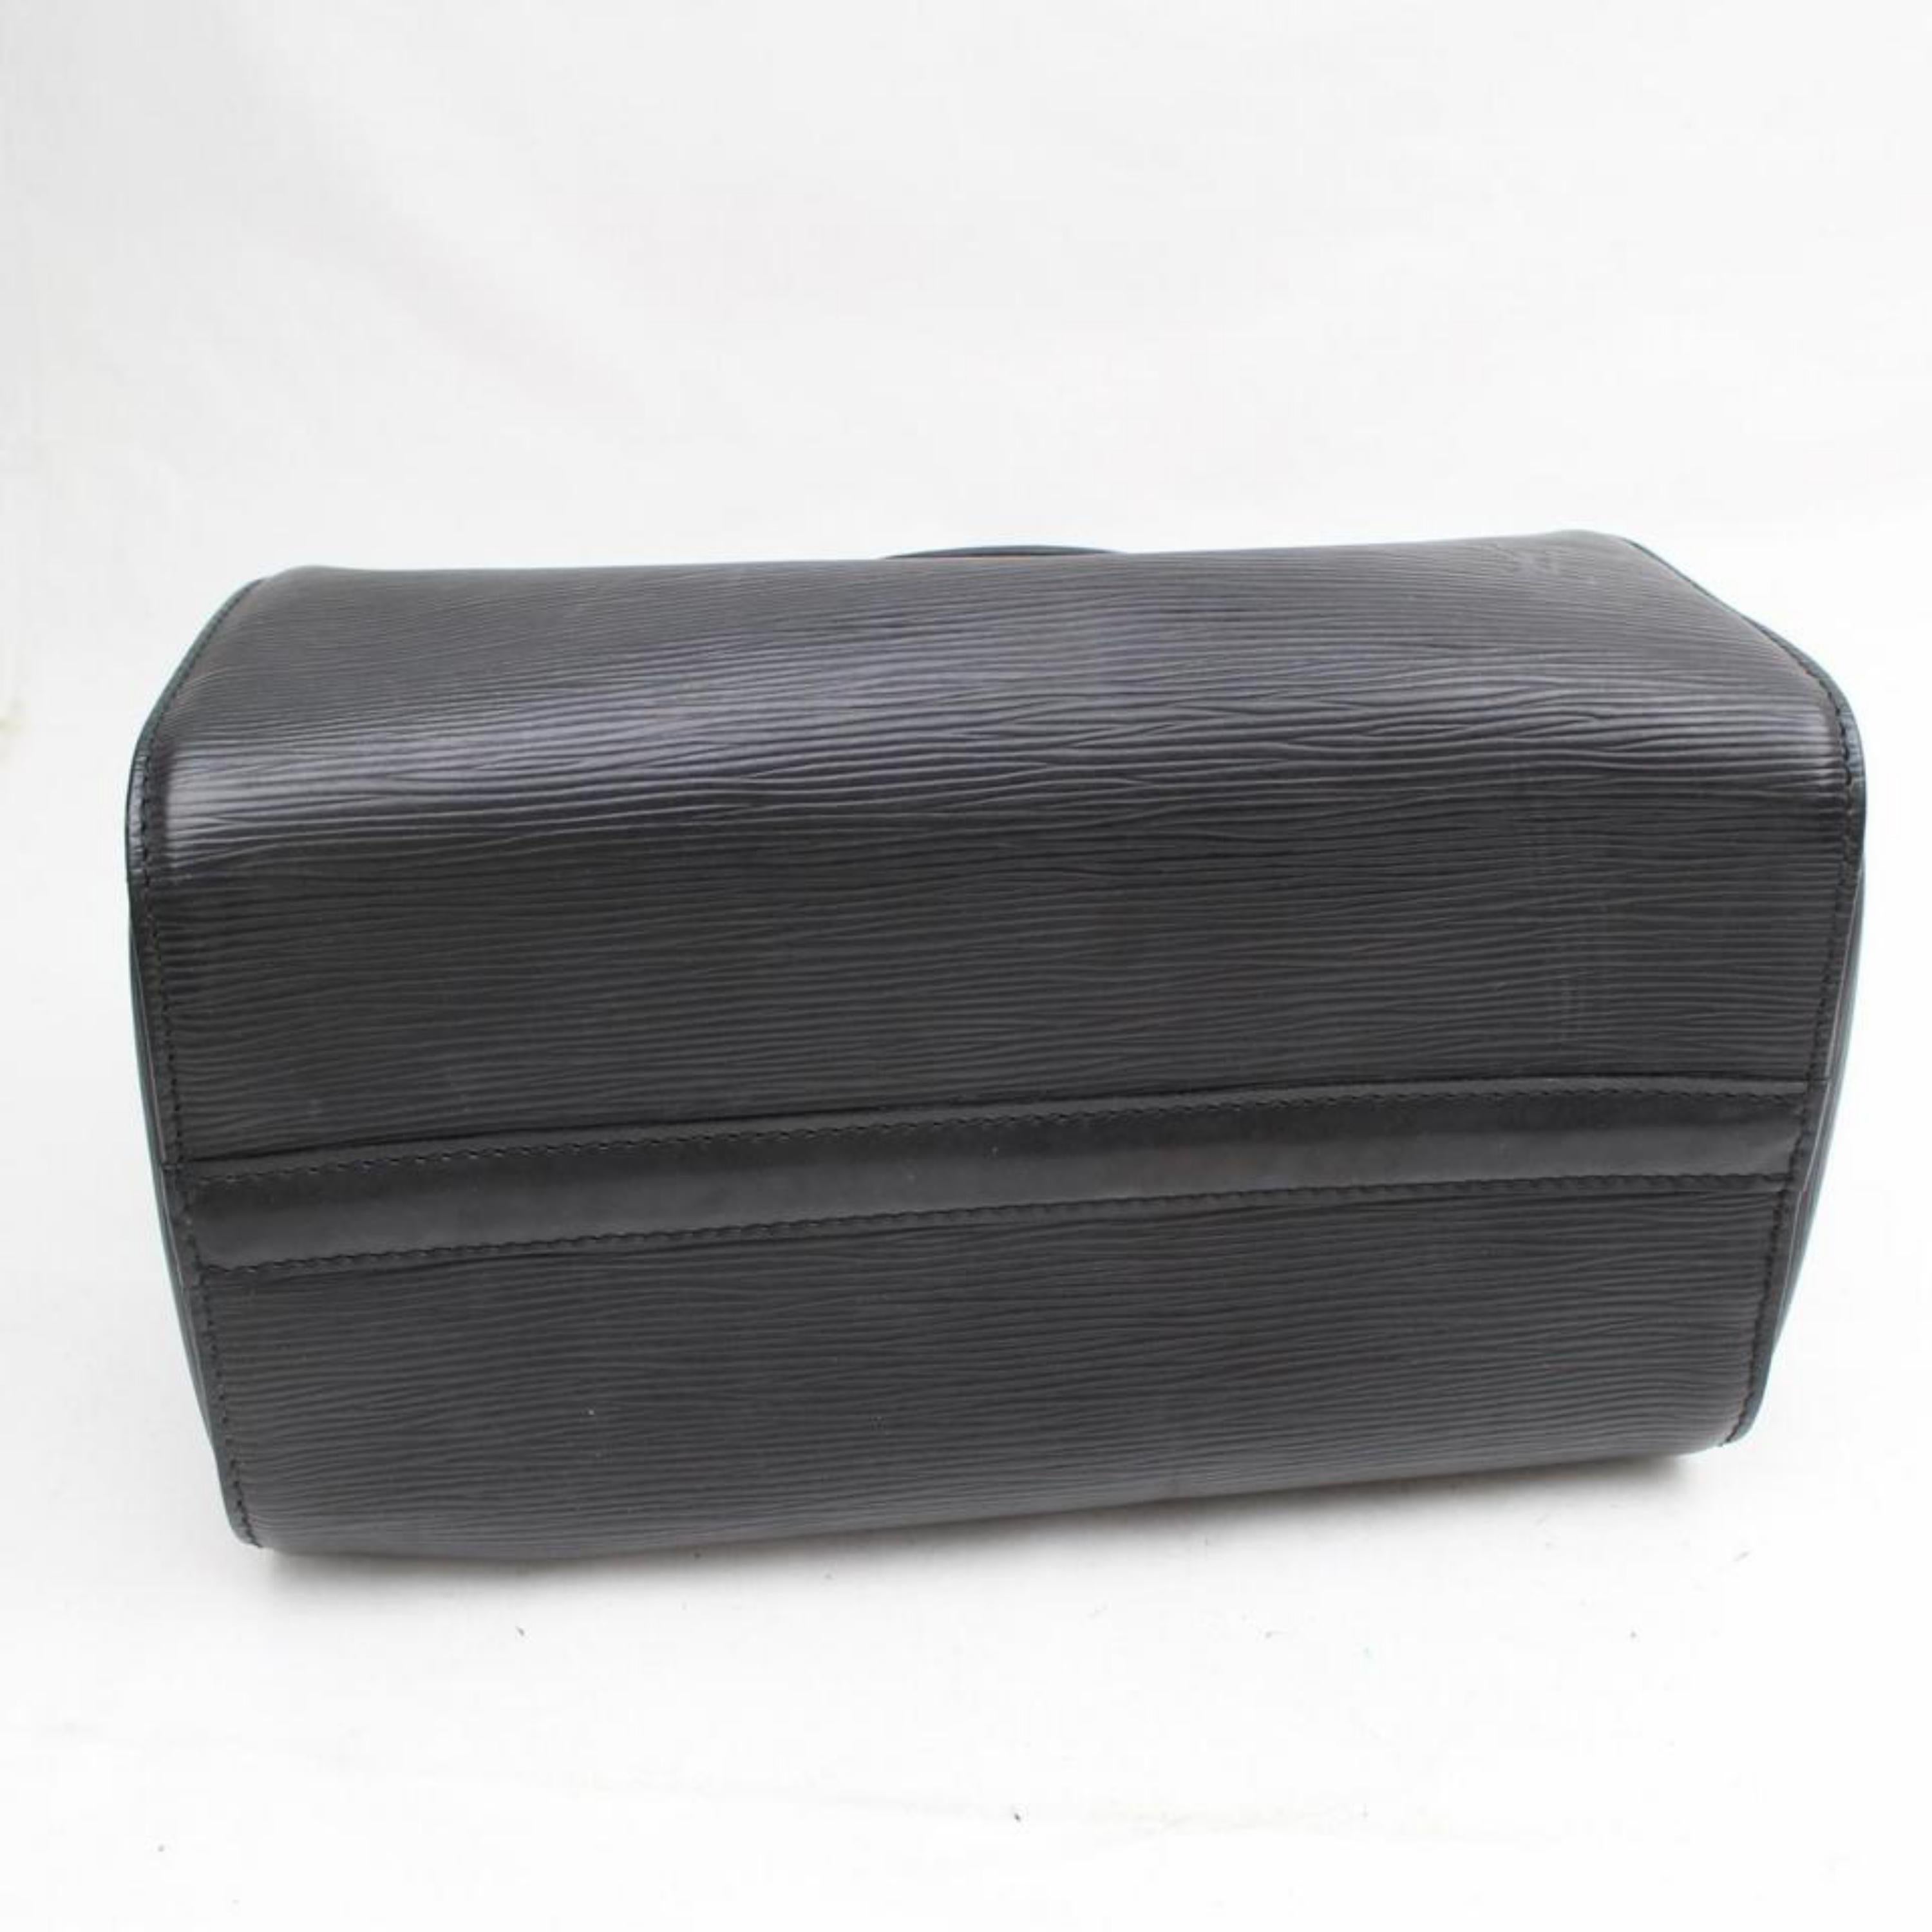 Louis Vuitton Speedy Noir 25 869188 Black Leather Satchel For Sale 4